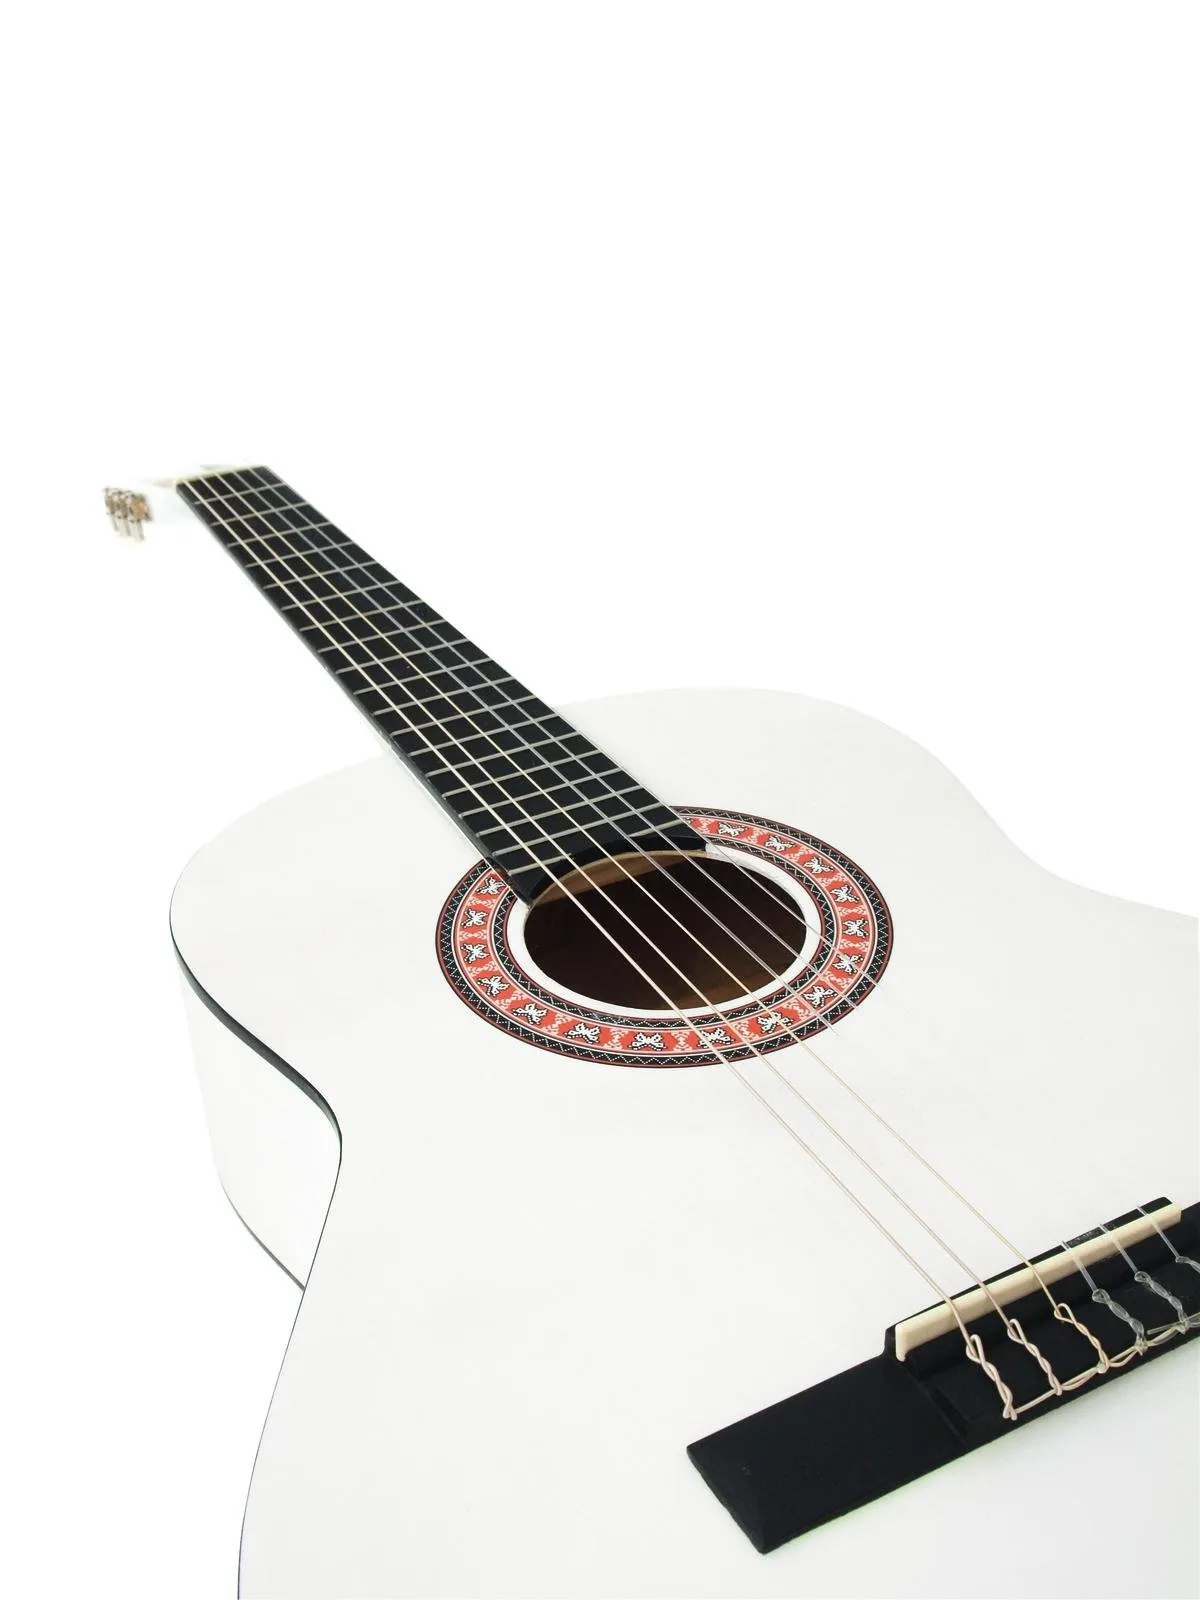 AC-330 Klassikgitarre Weiß